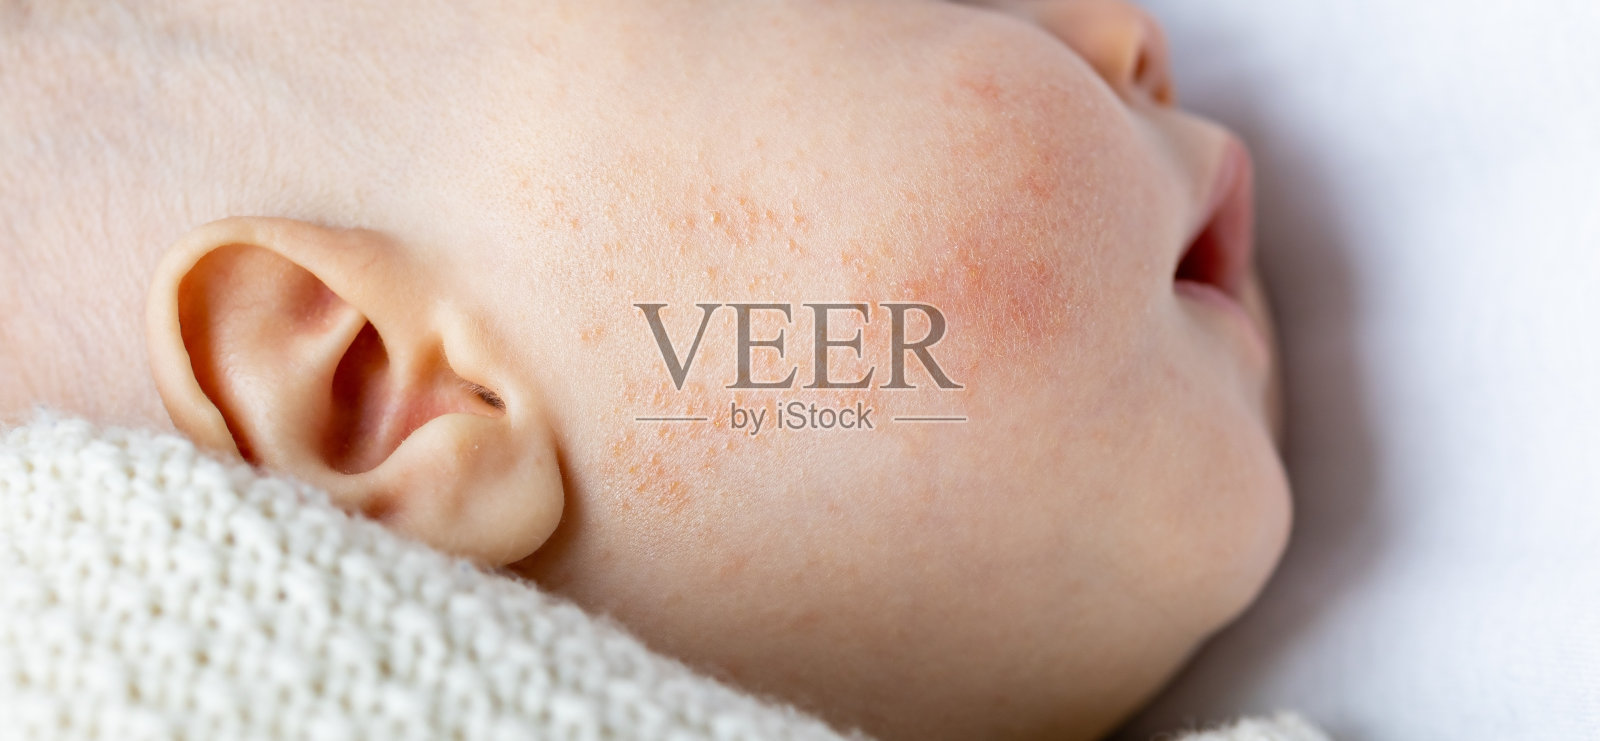 婴儿面部的过敏性皮肤特应性红肿照片摄影图片